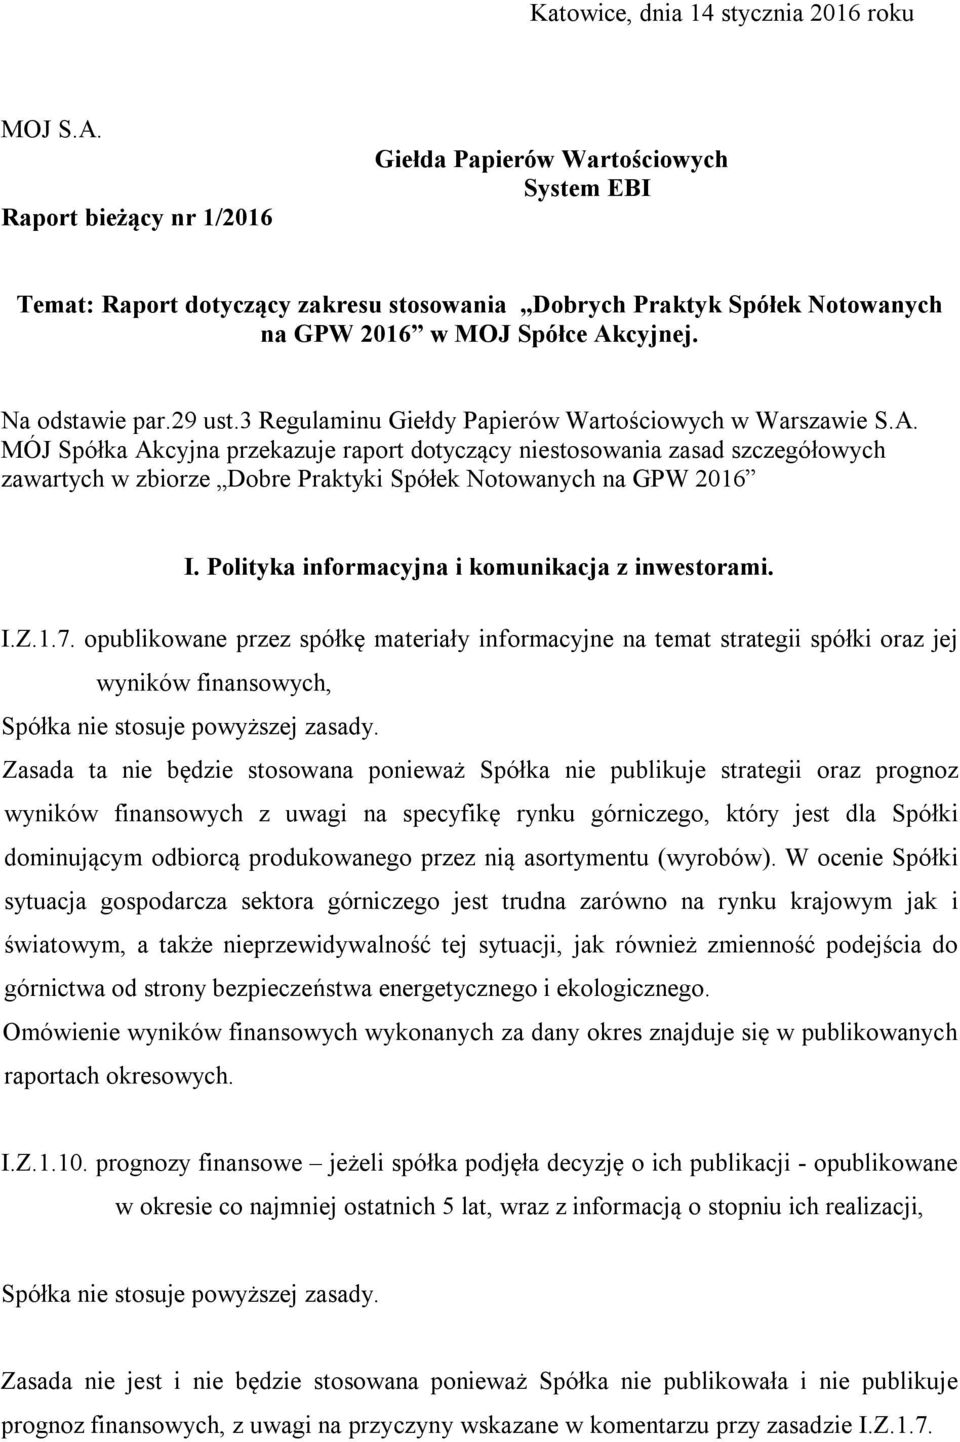 29 ust.3 Regulaminu Giełdy Papierów Wartościowych w Warszawie S.A.